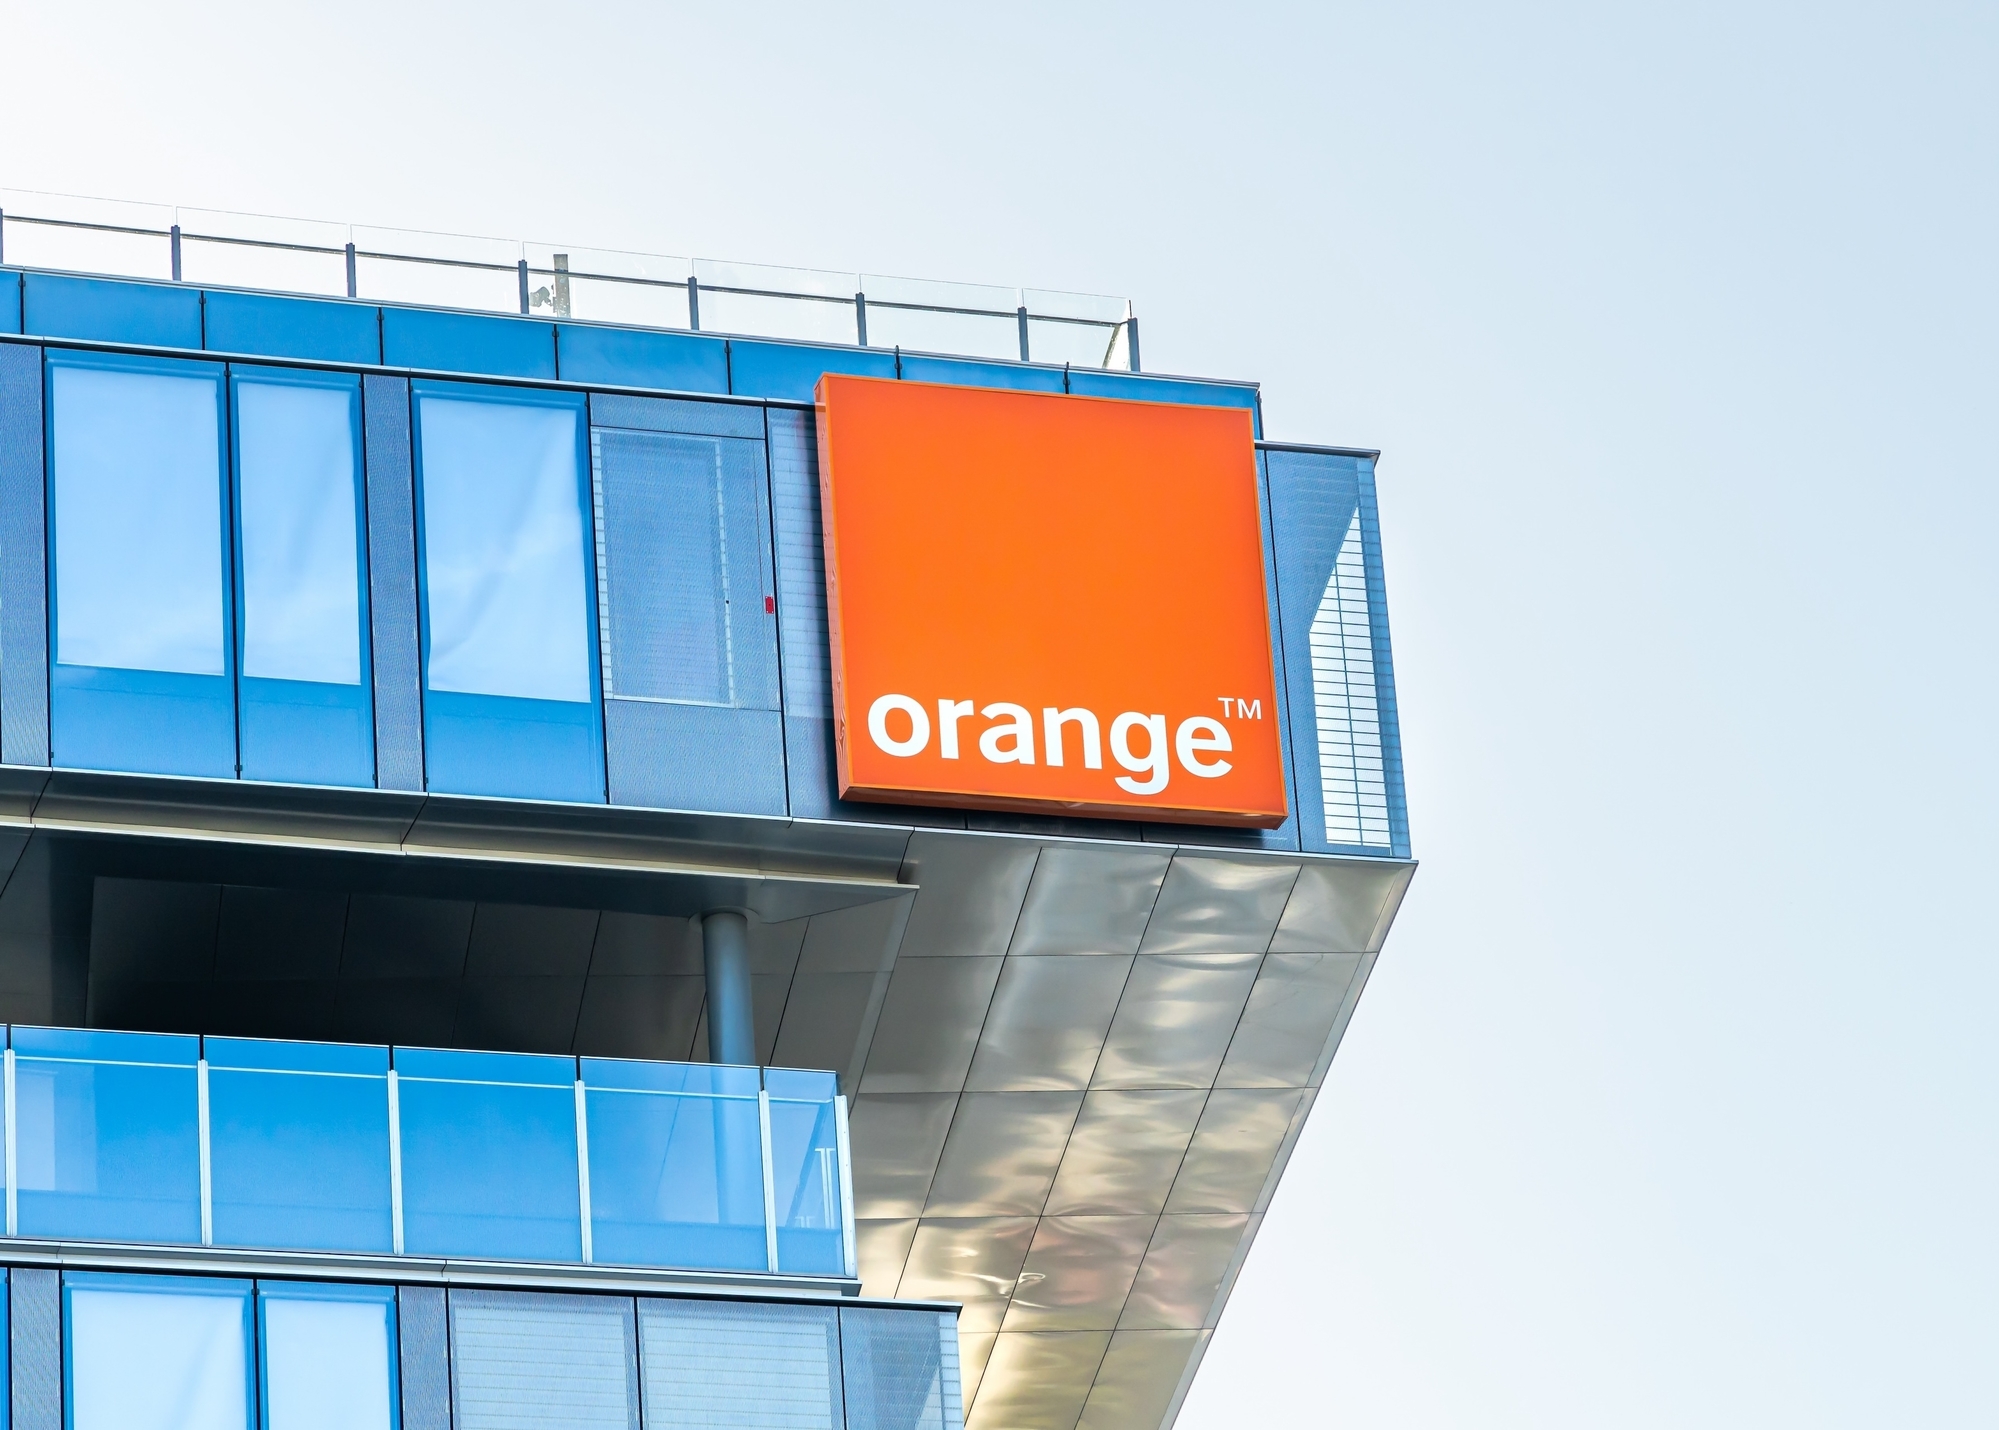 Déjà leader en France, Orange va devenir le numéro 2 des télécoms en Espagne ! L'Union européenne lui donne le feu vert